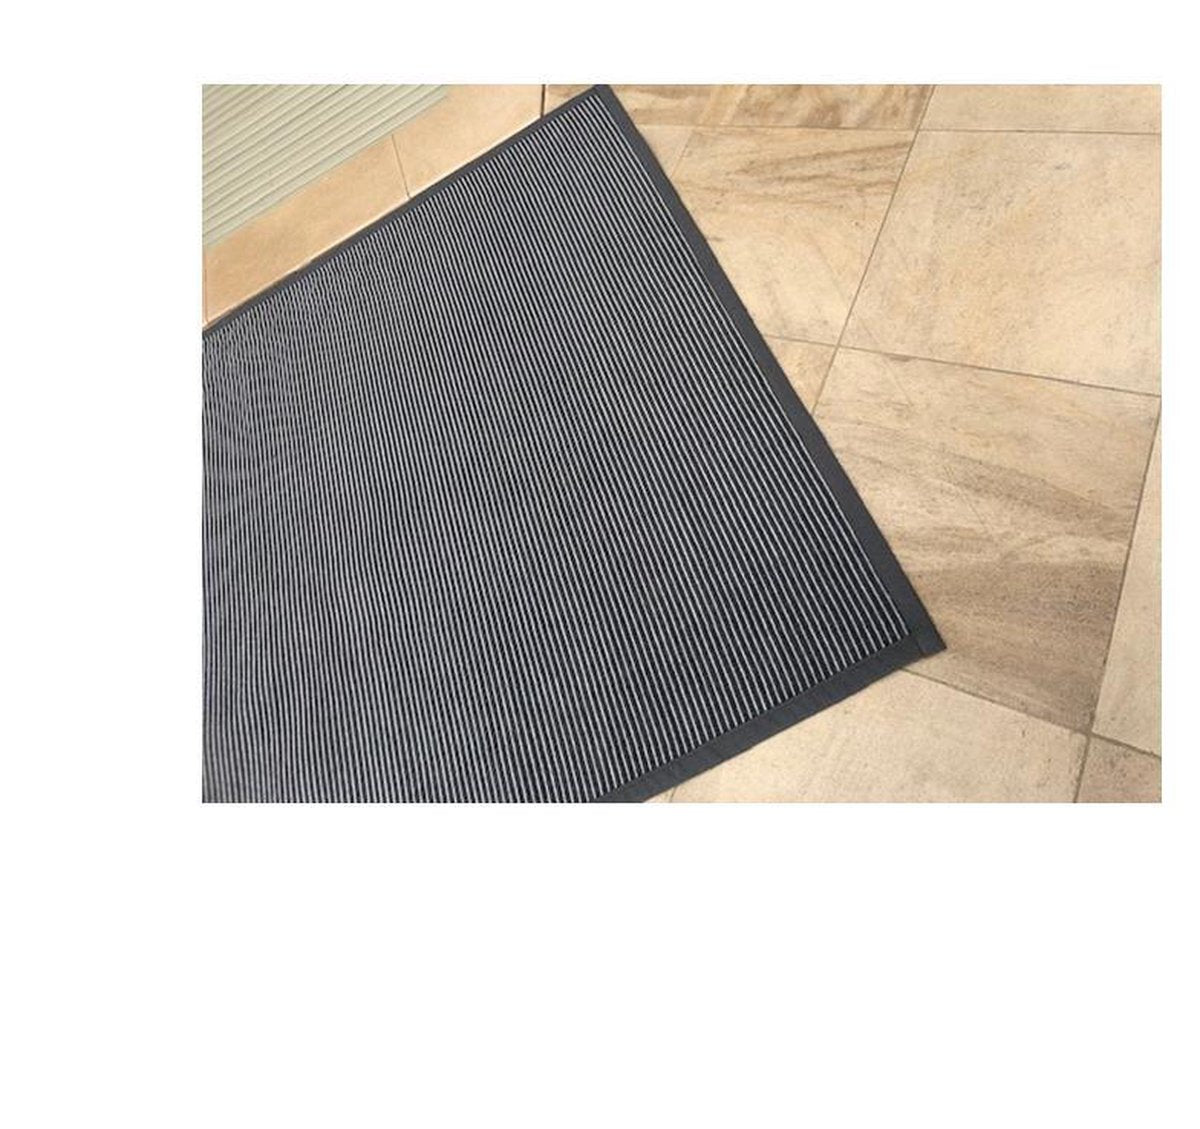 sisal Vloerkleed recto verso - tweezijdig vloerkleed - gratis antislip bijgeleverd -160/230 - donkergrijs carbon - tapijt - gestreept en visgraat